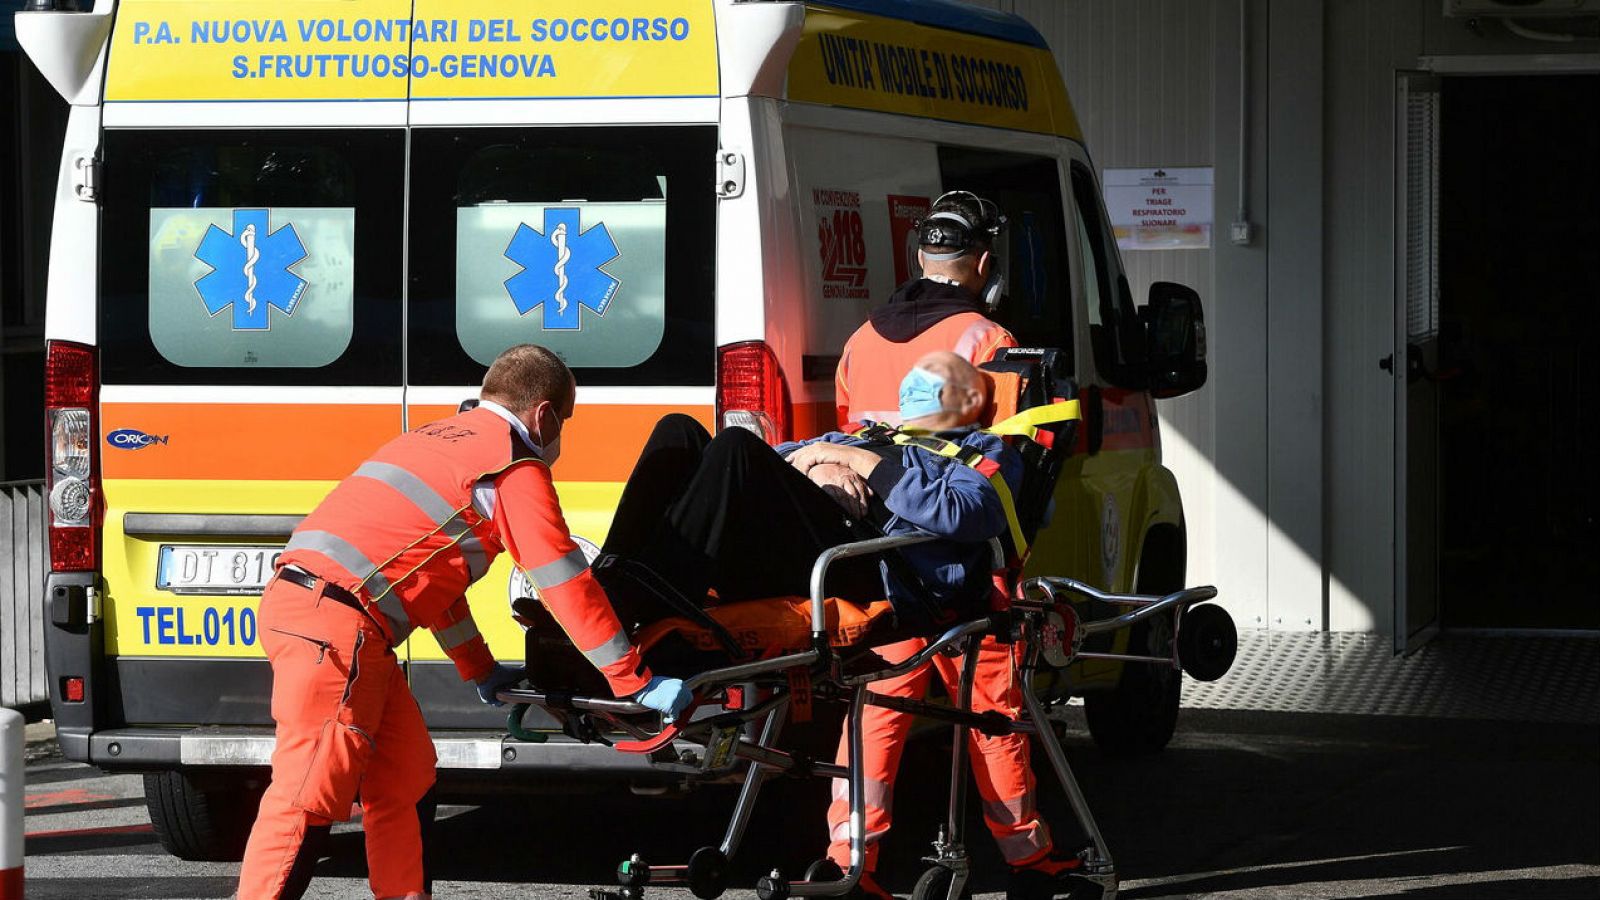 Trabajadores sanitarios con equipos de protección trasladan a un paciente con COVID-19 en el hospital policlínico San Martino, Génova, Italia.